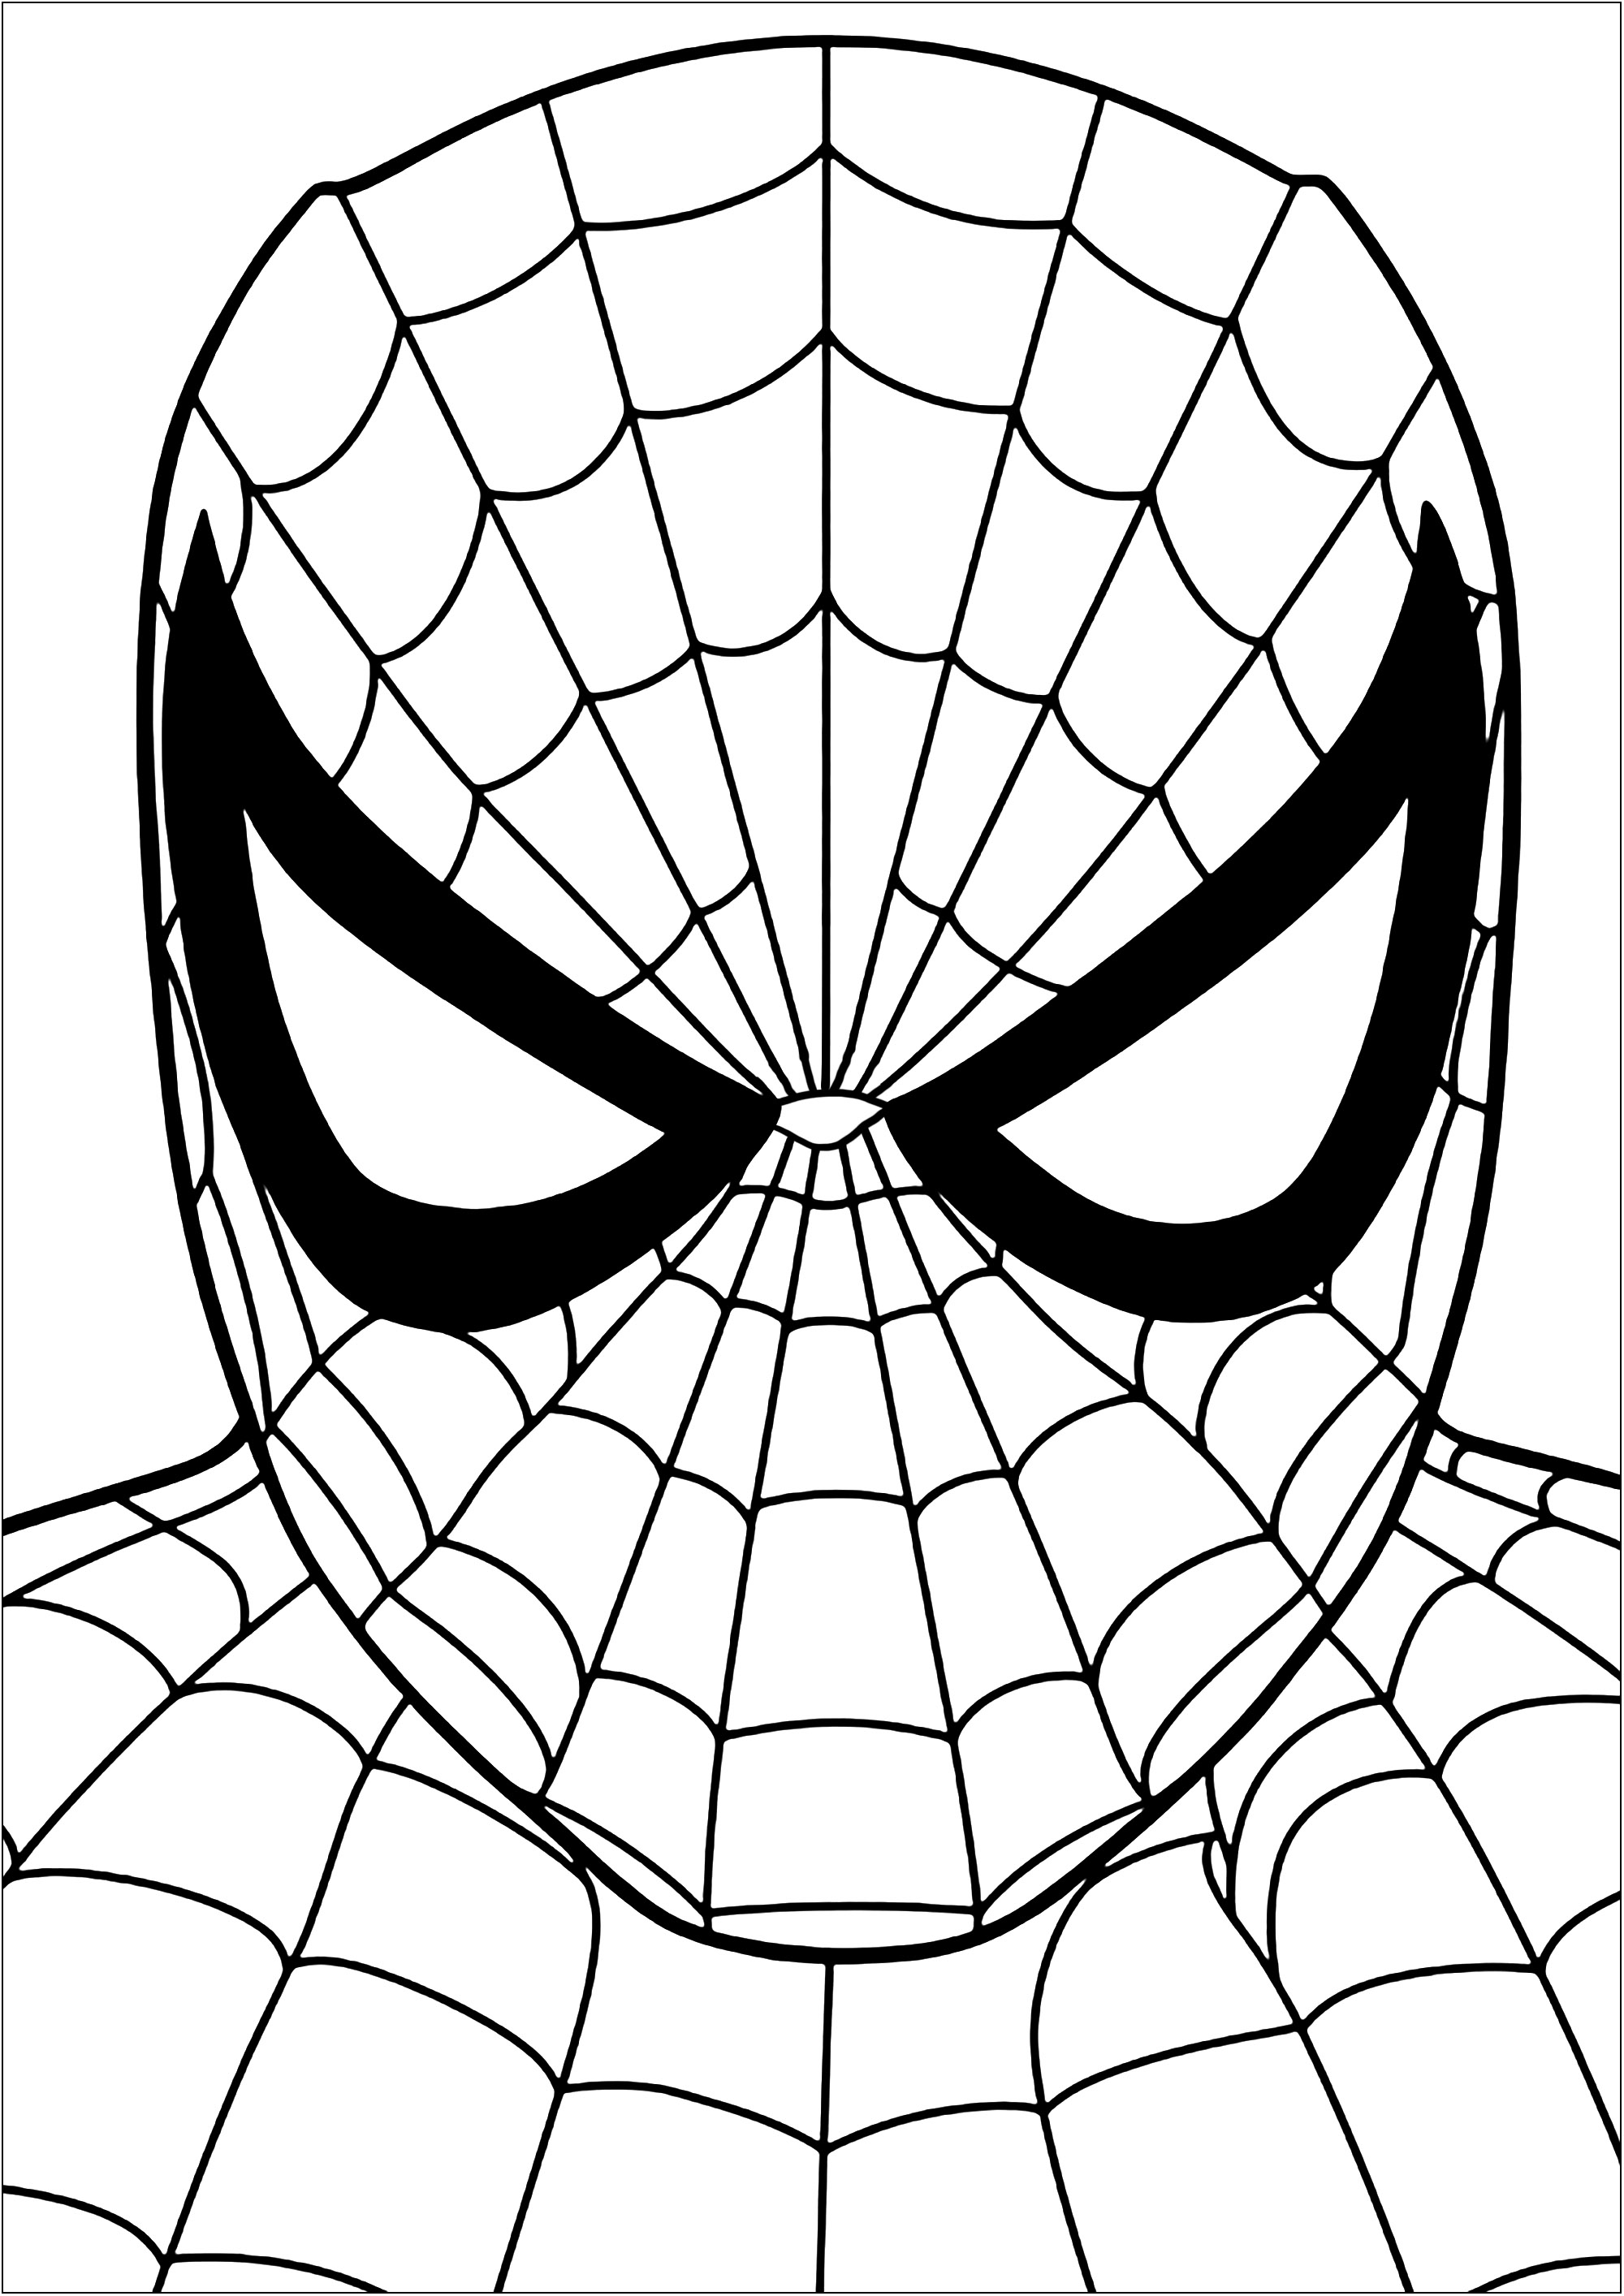 Colorir a cabeça do Homem-Aranha. Pinta cada uma das partes das teias de aranha que compõem este fato do Homem-Aranha, também conhecido como Peter Parker.